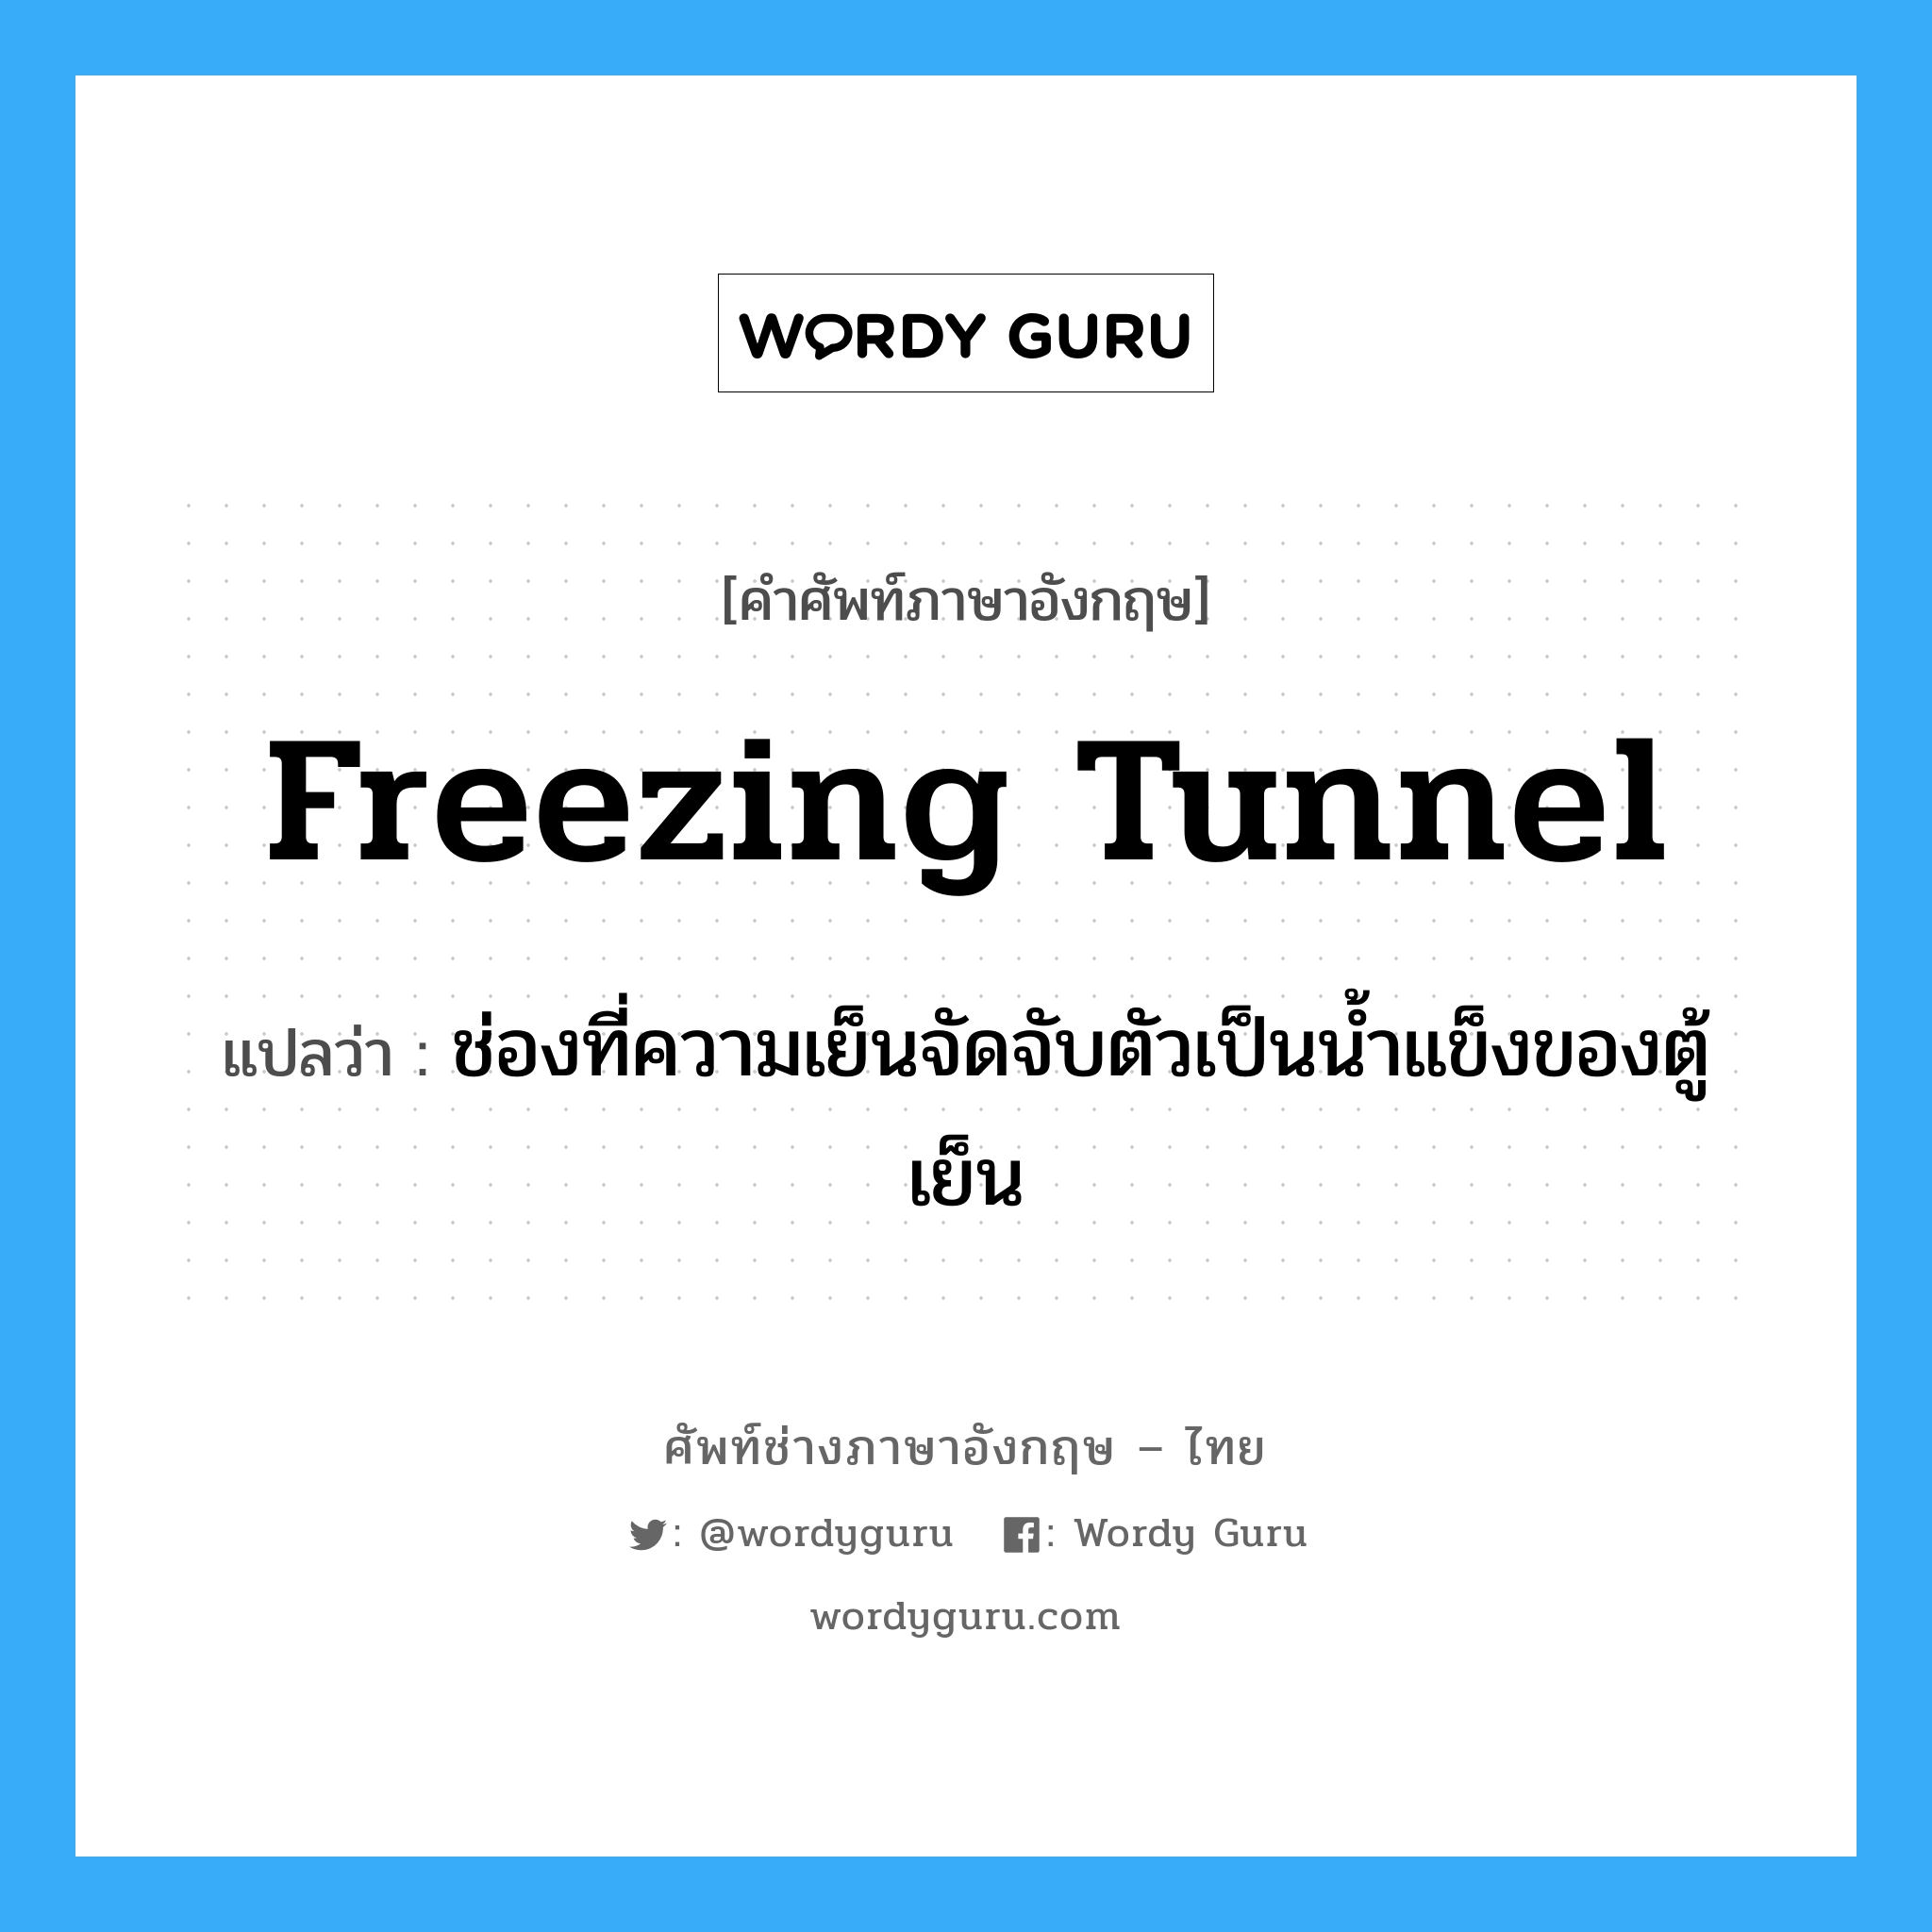 freezing tunnel แปลว่า?, คำศัพท์ช่างภาษาอังกฤษ - ไทย freezing tunnel คำศัพท์ภาษาอังกฤษ freezing tunnel แปลว่า ช่องที่ความเย็นจัดจับตัวเป็นน้ำแข็งของตู้เย็น